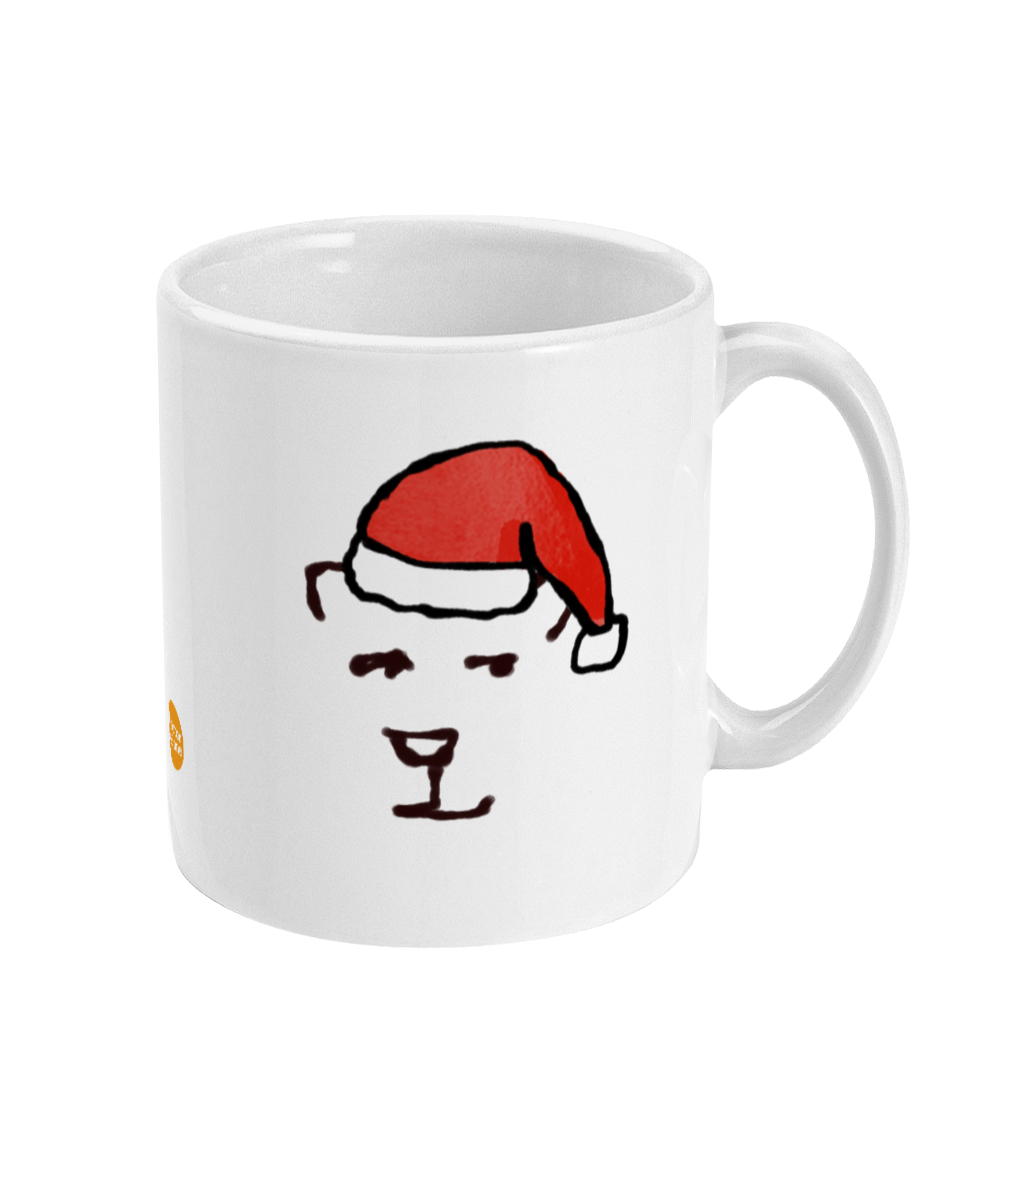 Santa Polar Bear Mug - Cute Christmas Bear mugs illustrated by Hector and Bone Right View